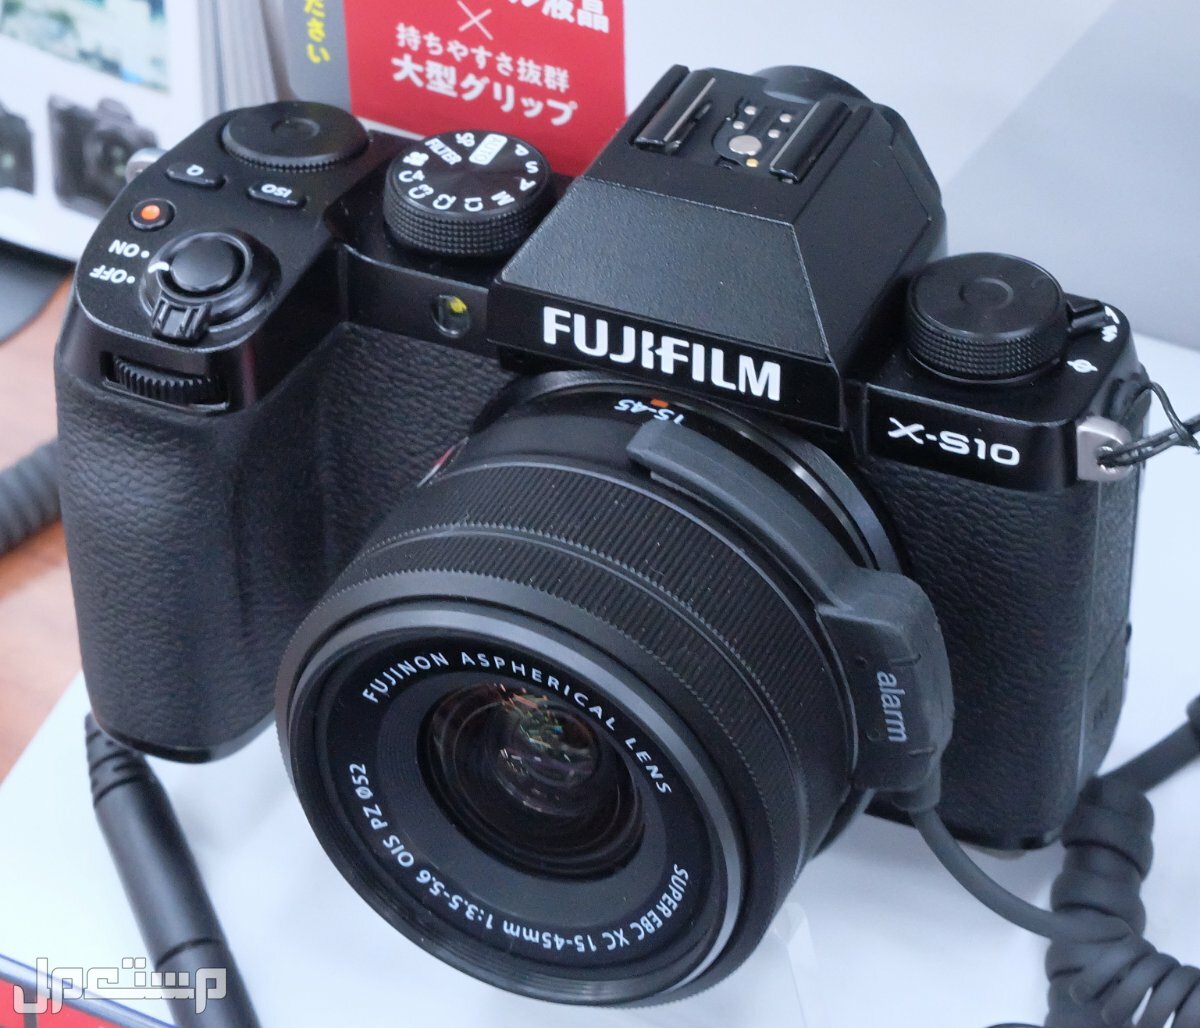 مواصفات ومميزات وعيوب كاميرات التصوير فوجي فيلم في مصر مواصفات كاميرا Fujifilm X-S10